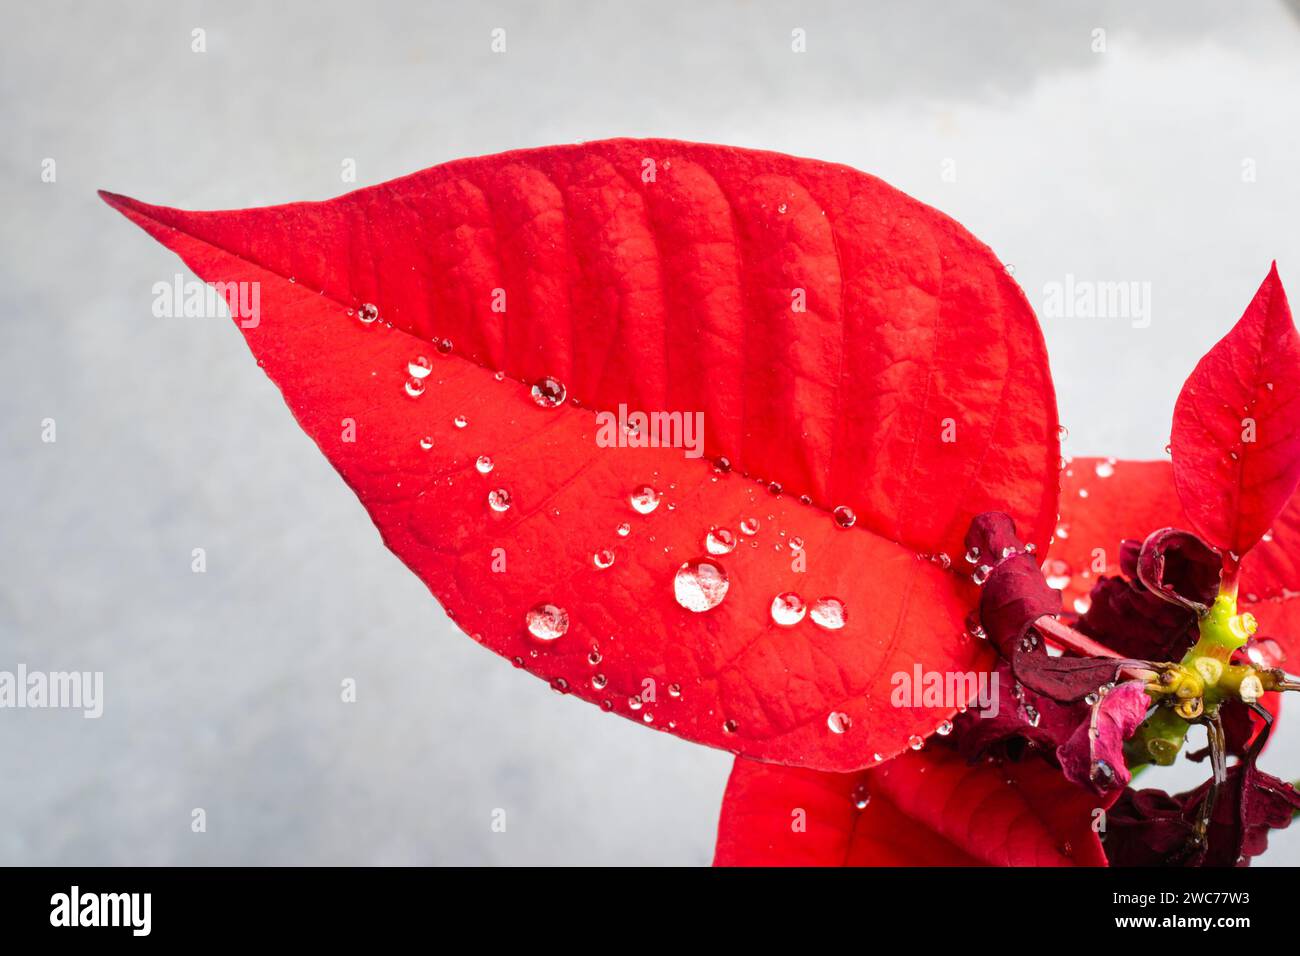 Gouttelettes d'eau sur la feuille rouge de la Poinsettia, également connue sous le nom de fleur de Noël Banque D'Images